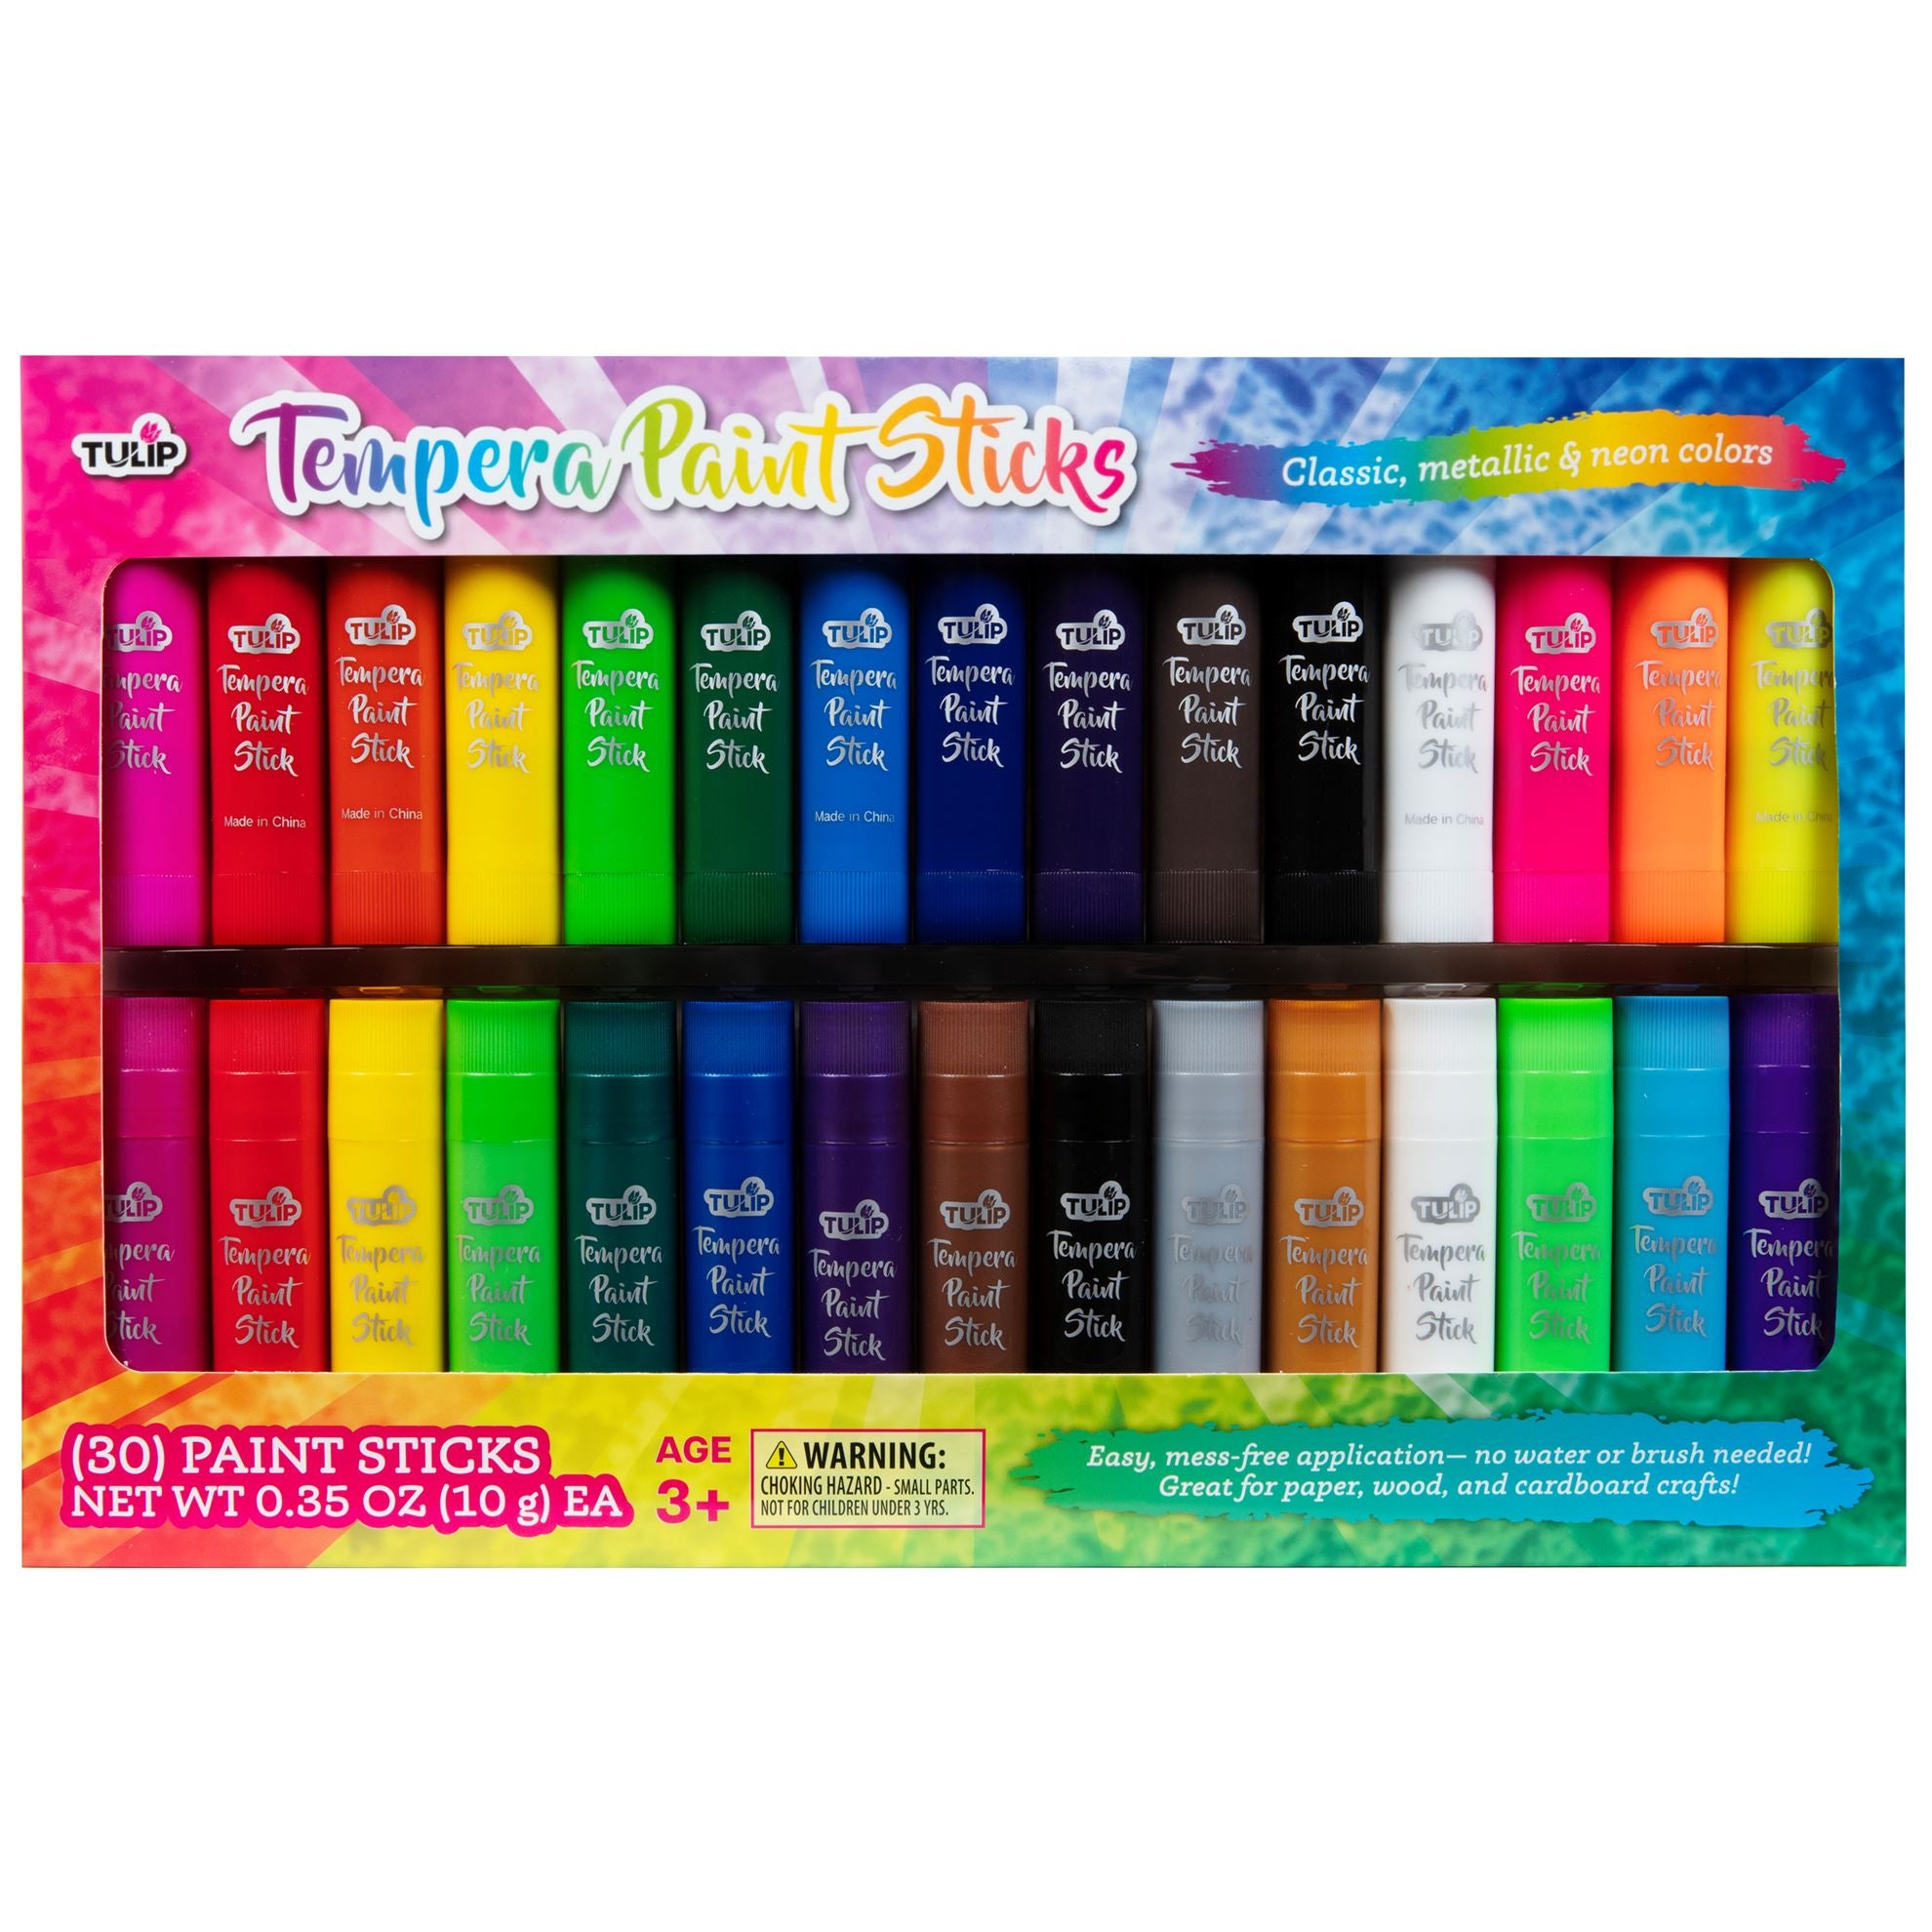 Kwik Stix Paint, Solid Tempra - 6 pack, 0.35 oz